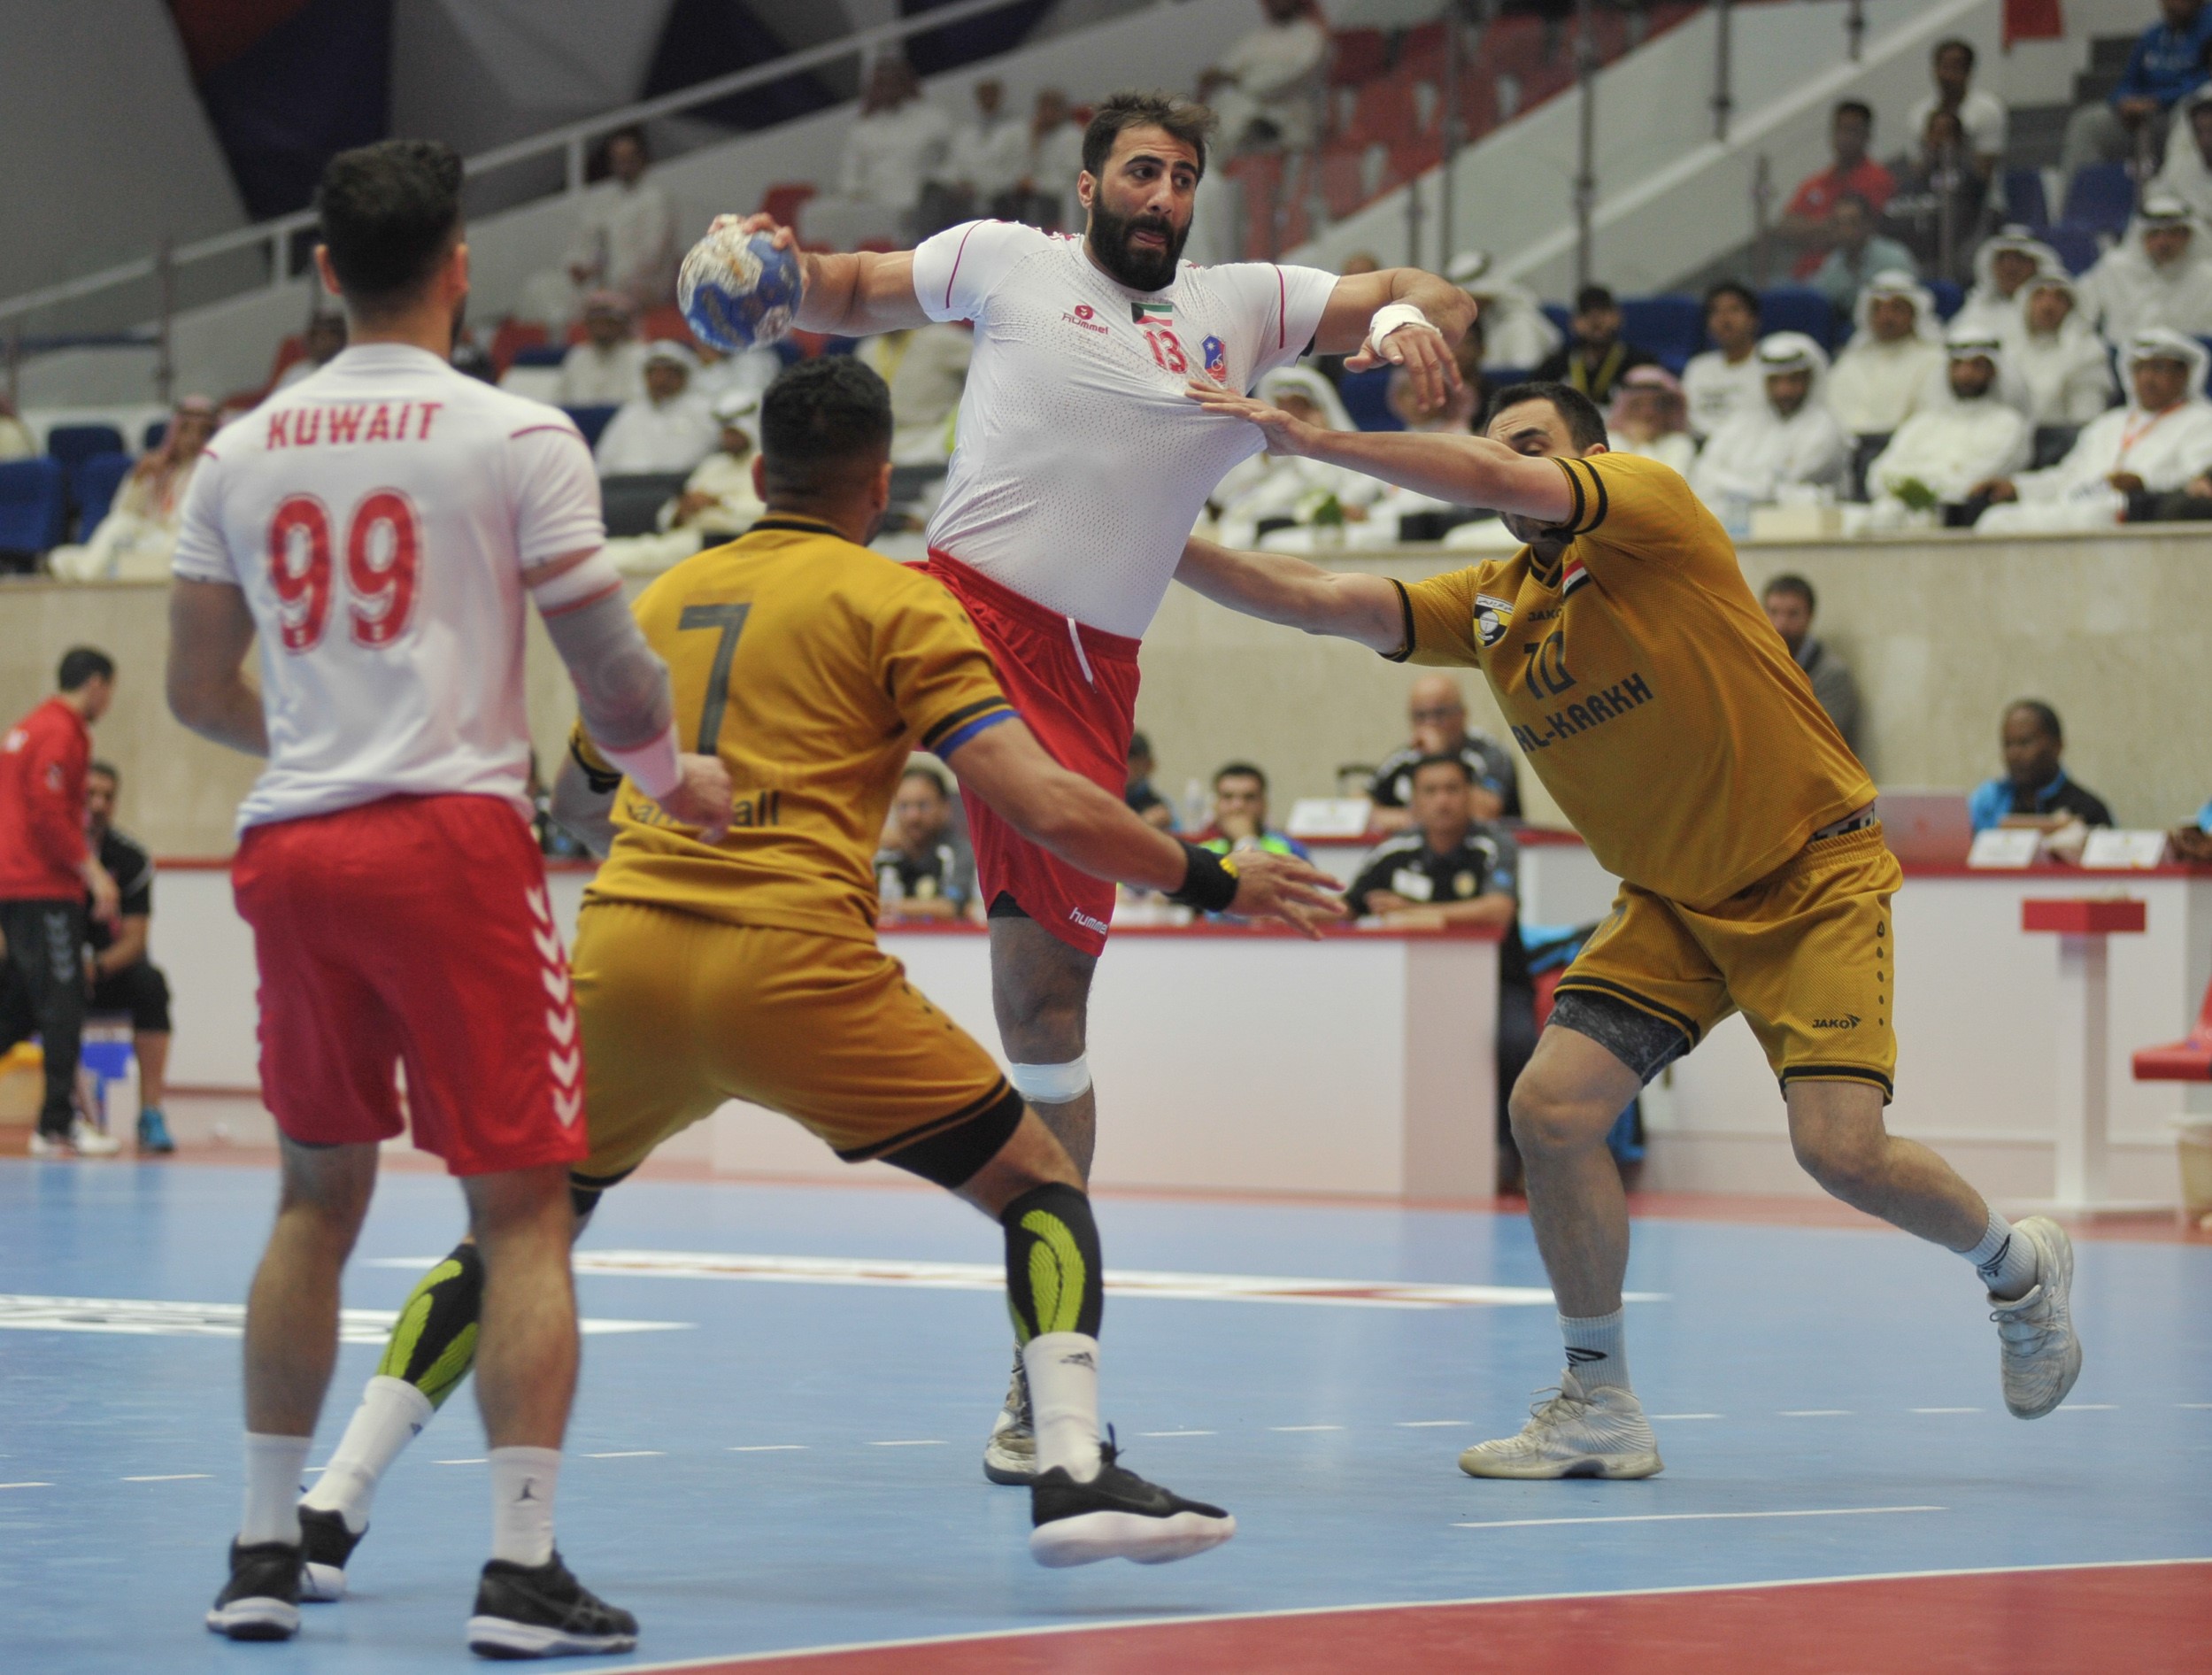 جانب من مباراة فريق الكويت الكويتي والكرخ العراقي ضمن منافسات المجموعة الثالثة في البطولة الاسيوية للاندية الابطال ال21 لكرة اليد